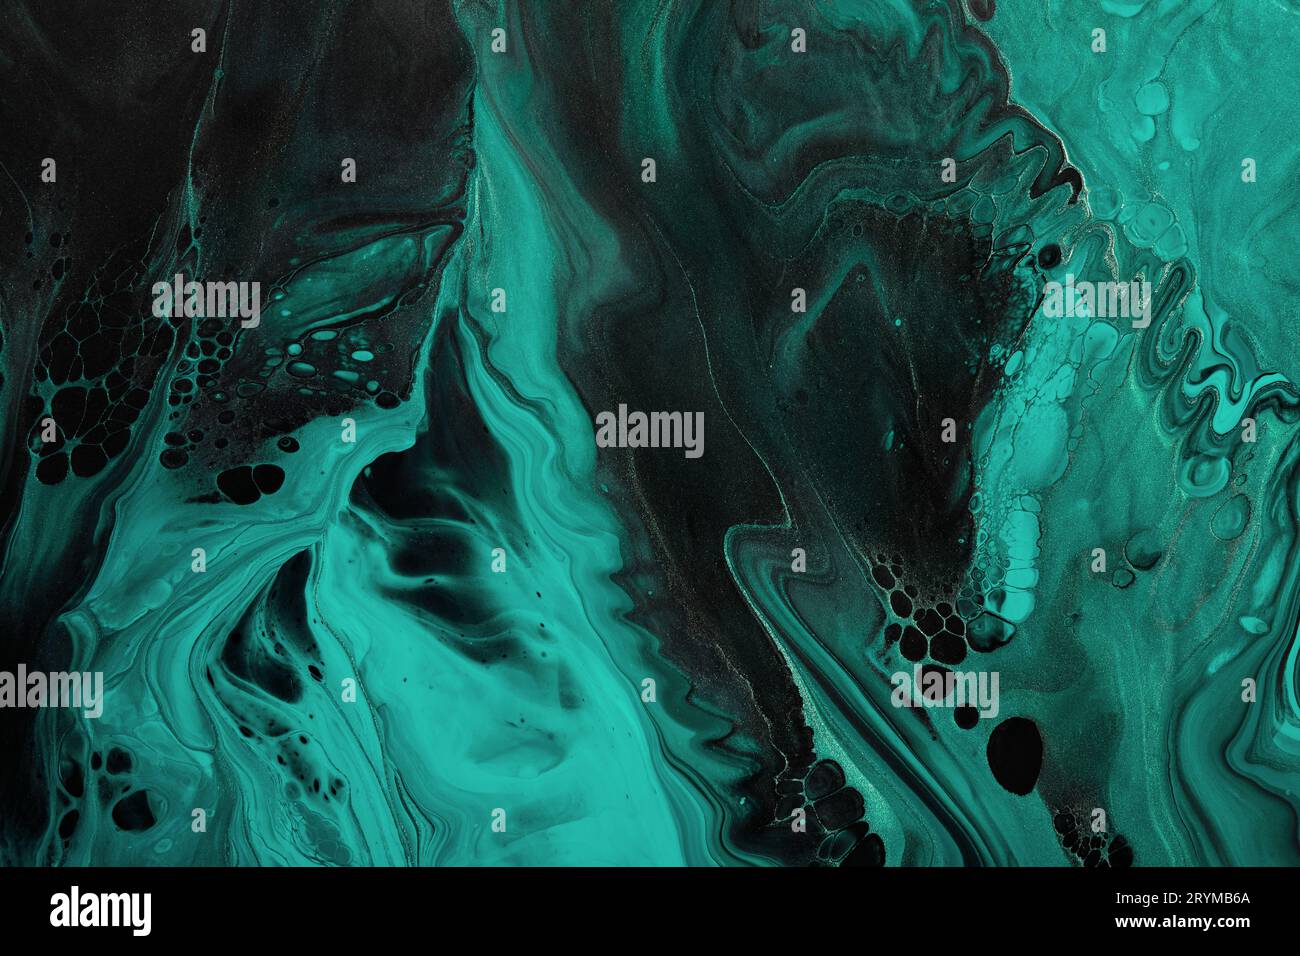 Fluide Art. Grüne abstrakte Welle wirbelt auf schwarzem Hintergrund. Hintergrund oder Textur mit Marmoreffekt Stockfoto